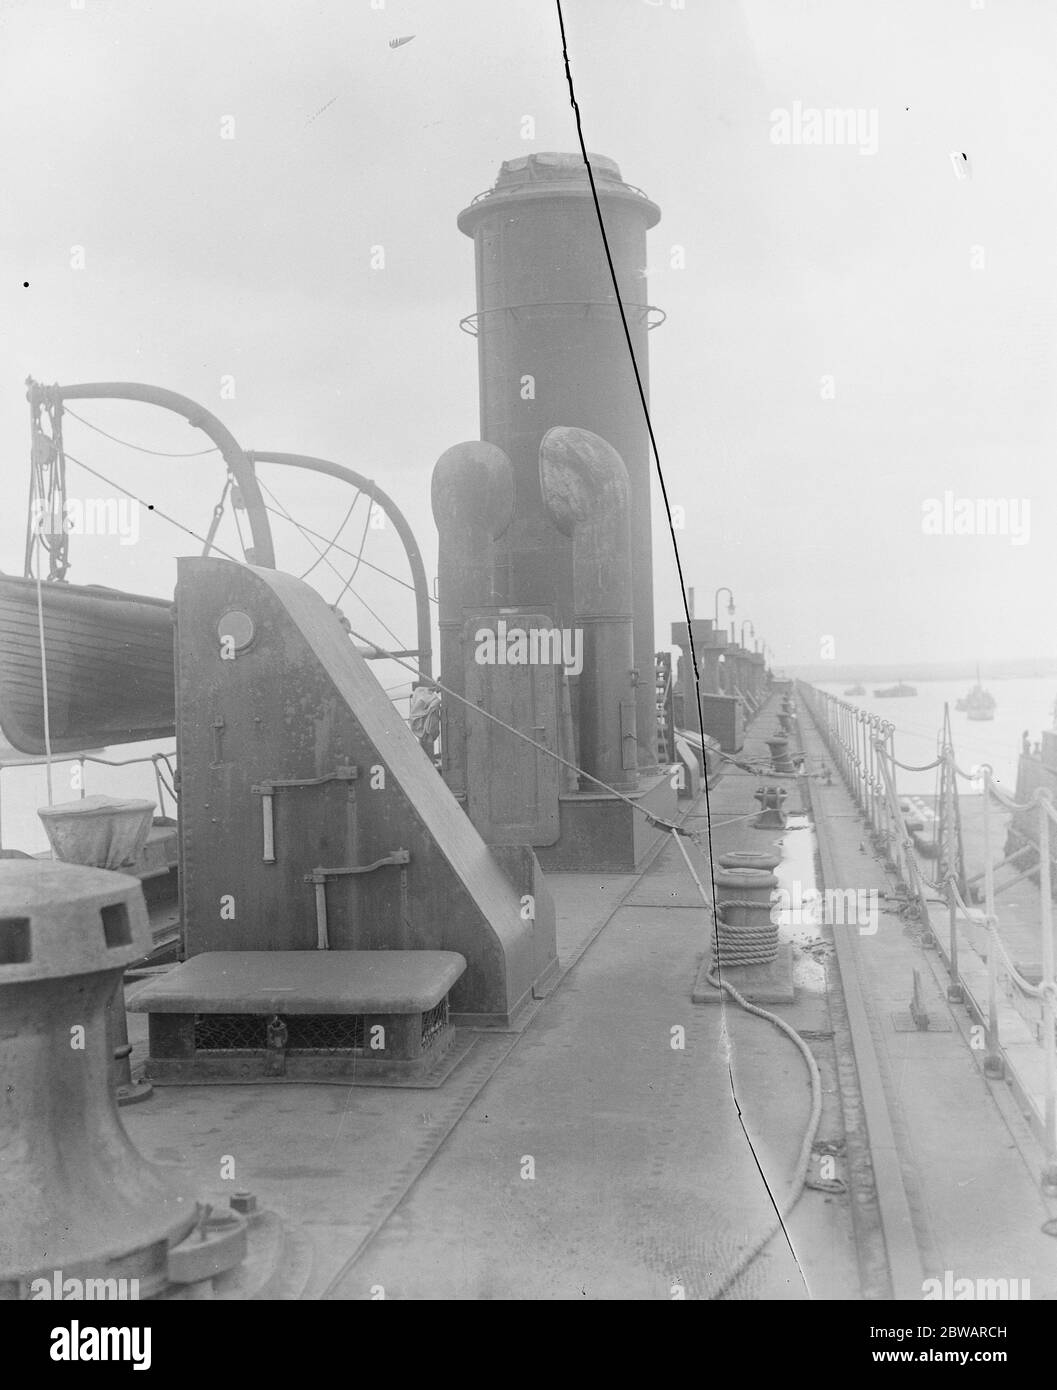 Gigantisches deutsches Schwimmdock Surredered eine erstaunliche Struktur an Sheerness anklopften riesige deutsche Schwimmdock, Nr. 23 an Port Victoria, Sheerness Blick auf das Deck des Docks 3 Mai 1921 Stockfoto